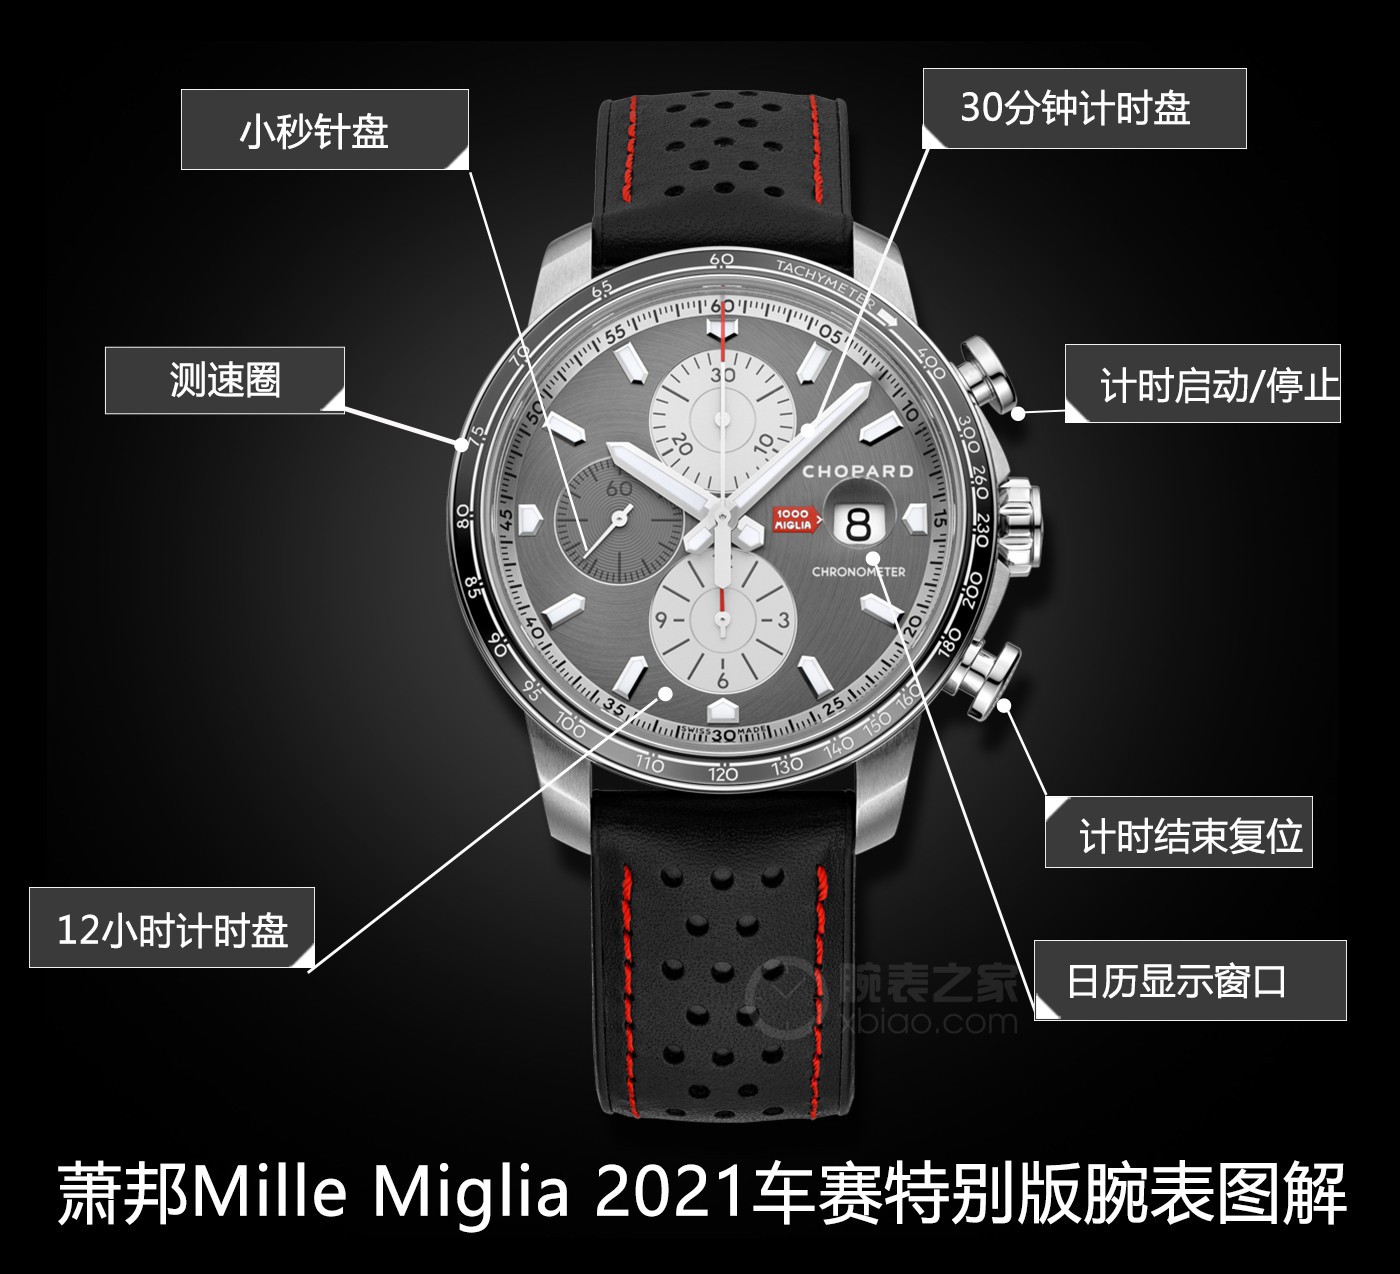 复古跟赛车两种流行元素它都有 品鉴萧邦Mille Miglia 2021车赛特别版腕表